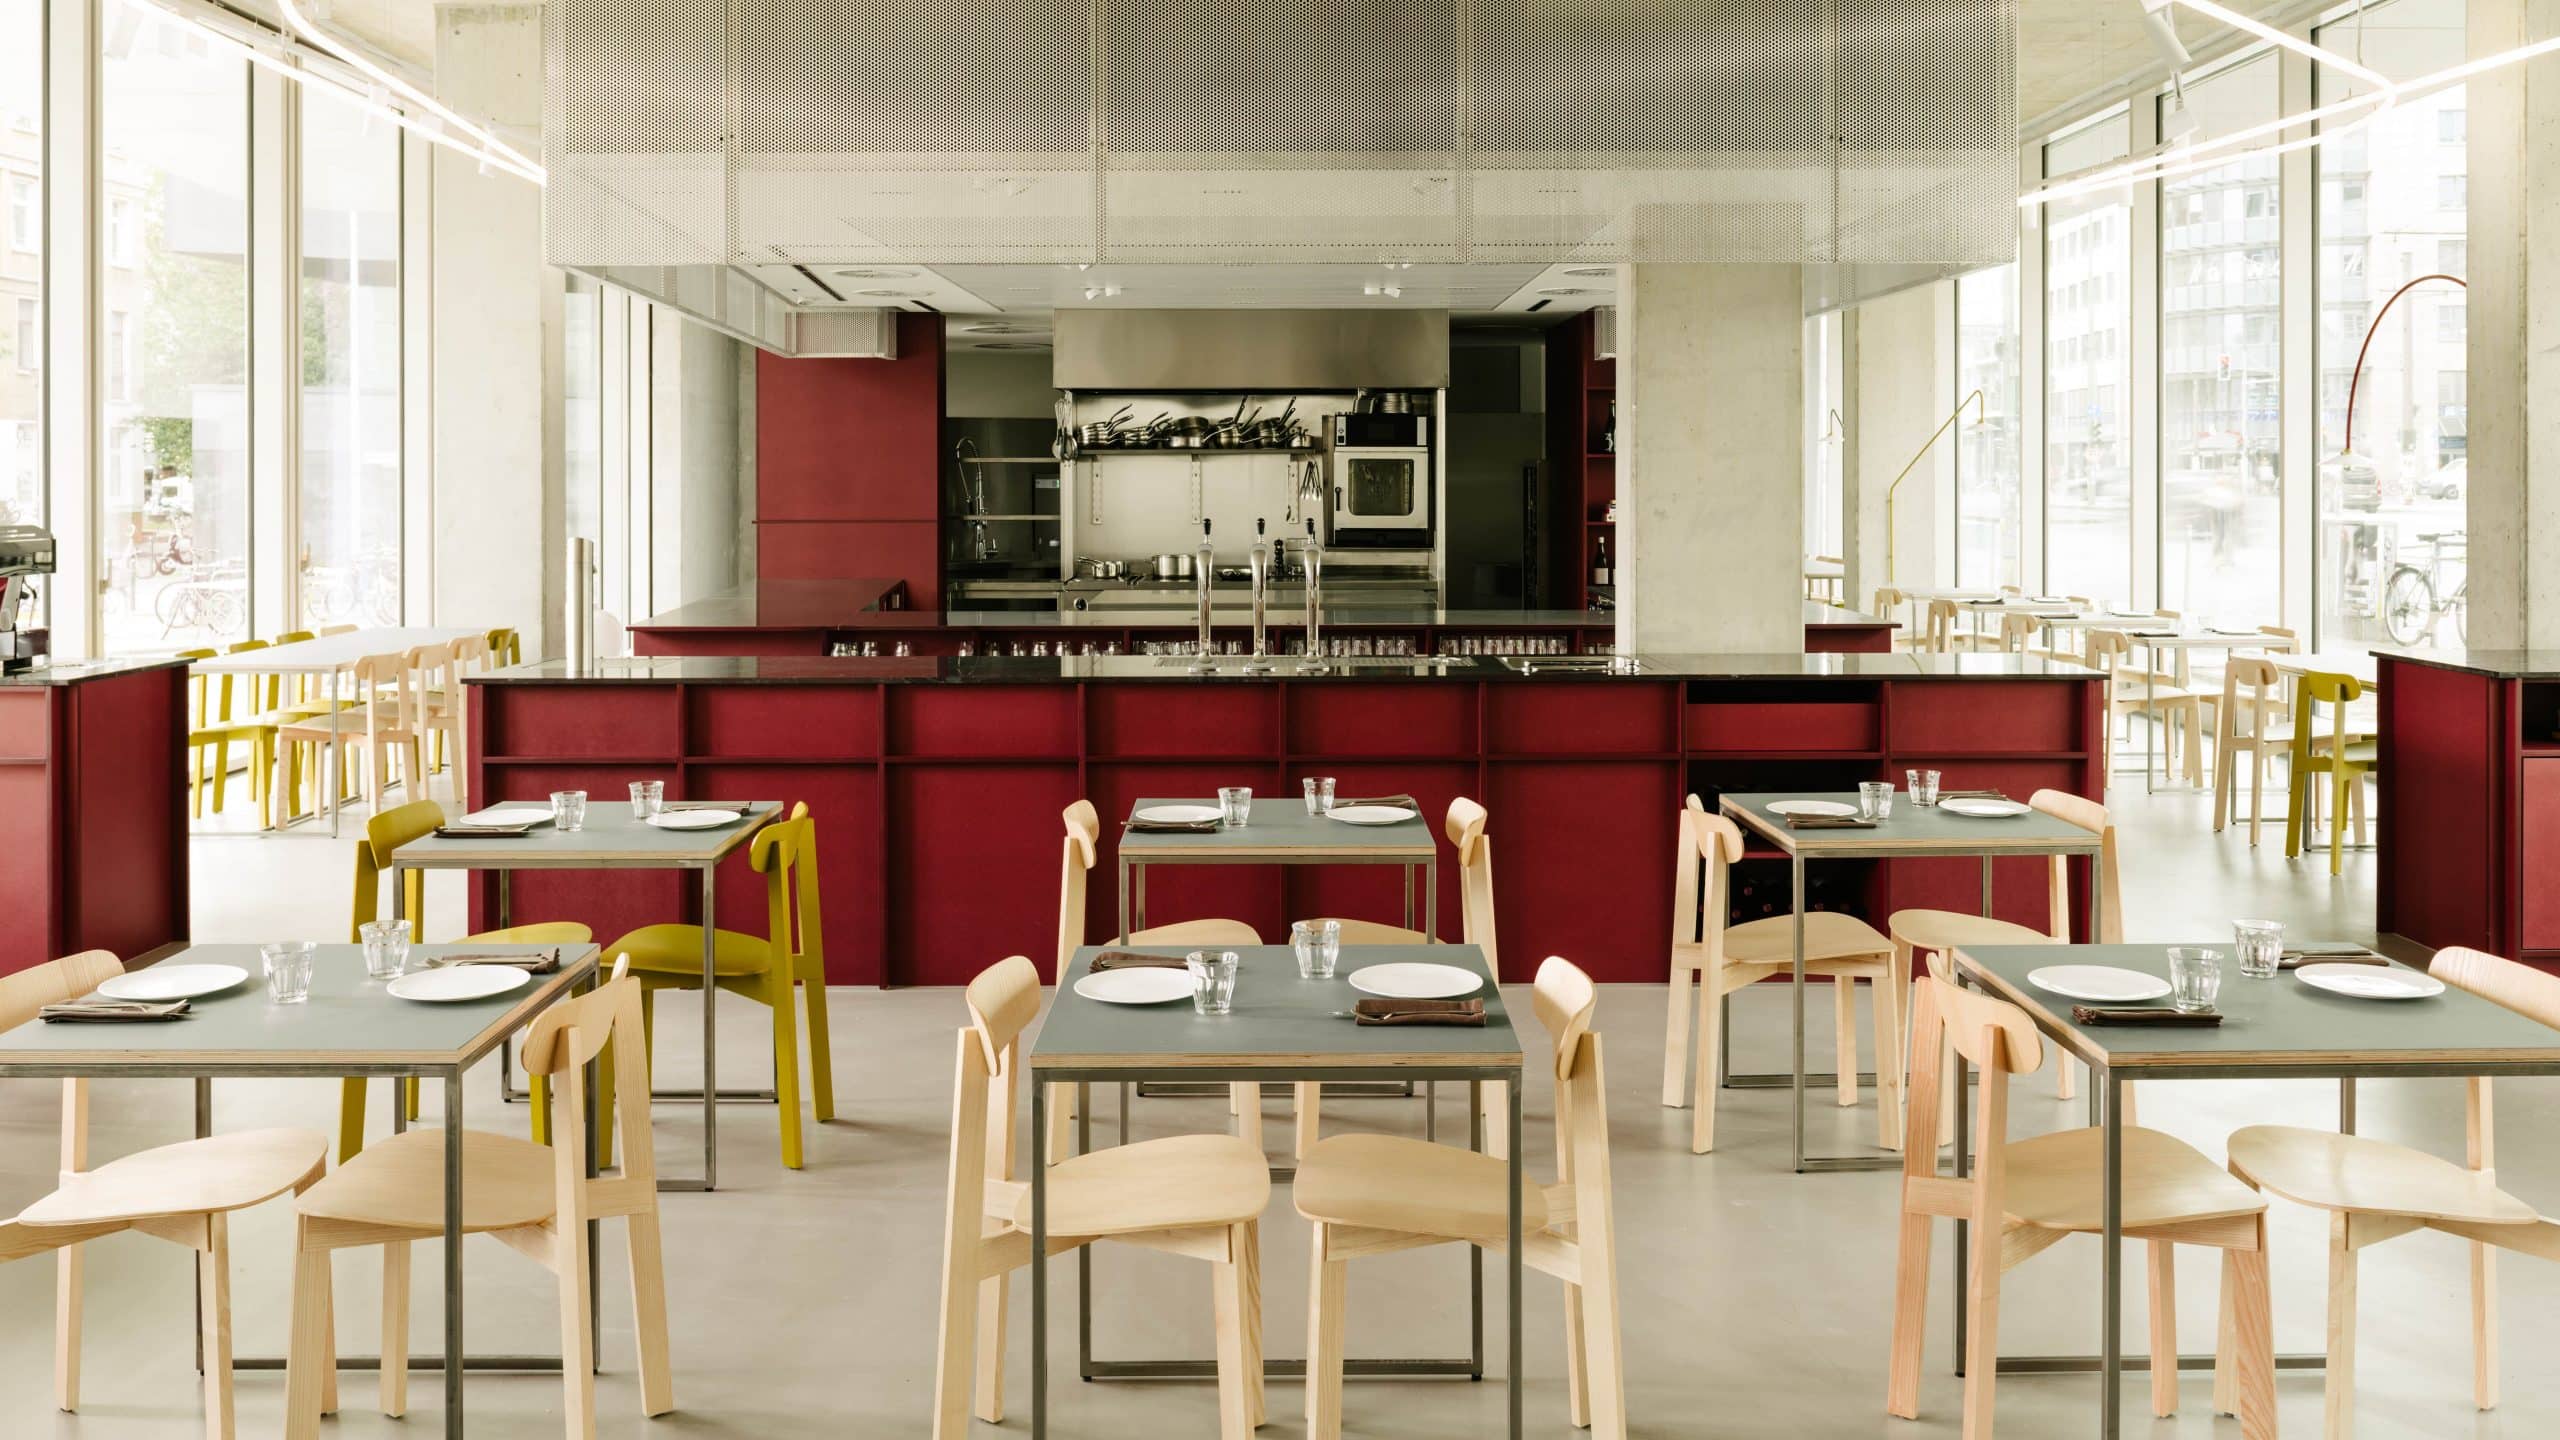 Die offene Küche und die davorliegende Bar bilden den Mittelpunkt des Restaurants Remi. Foto: Robert Rieger